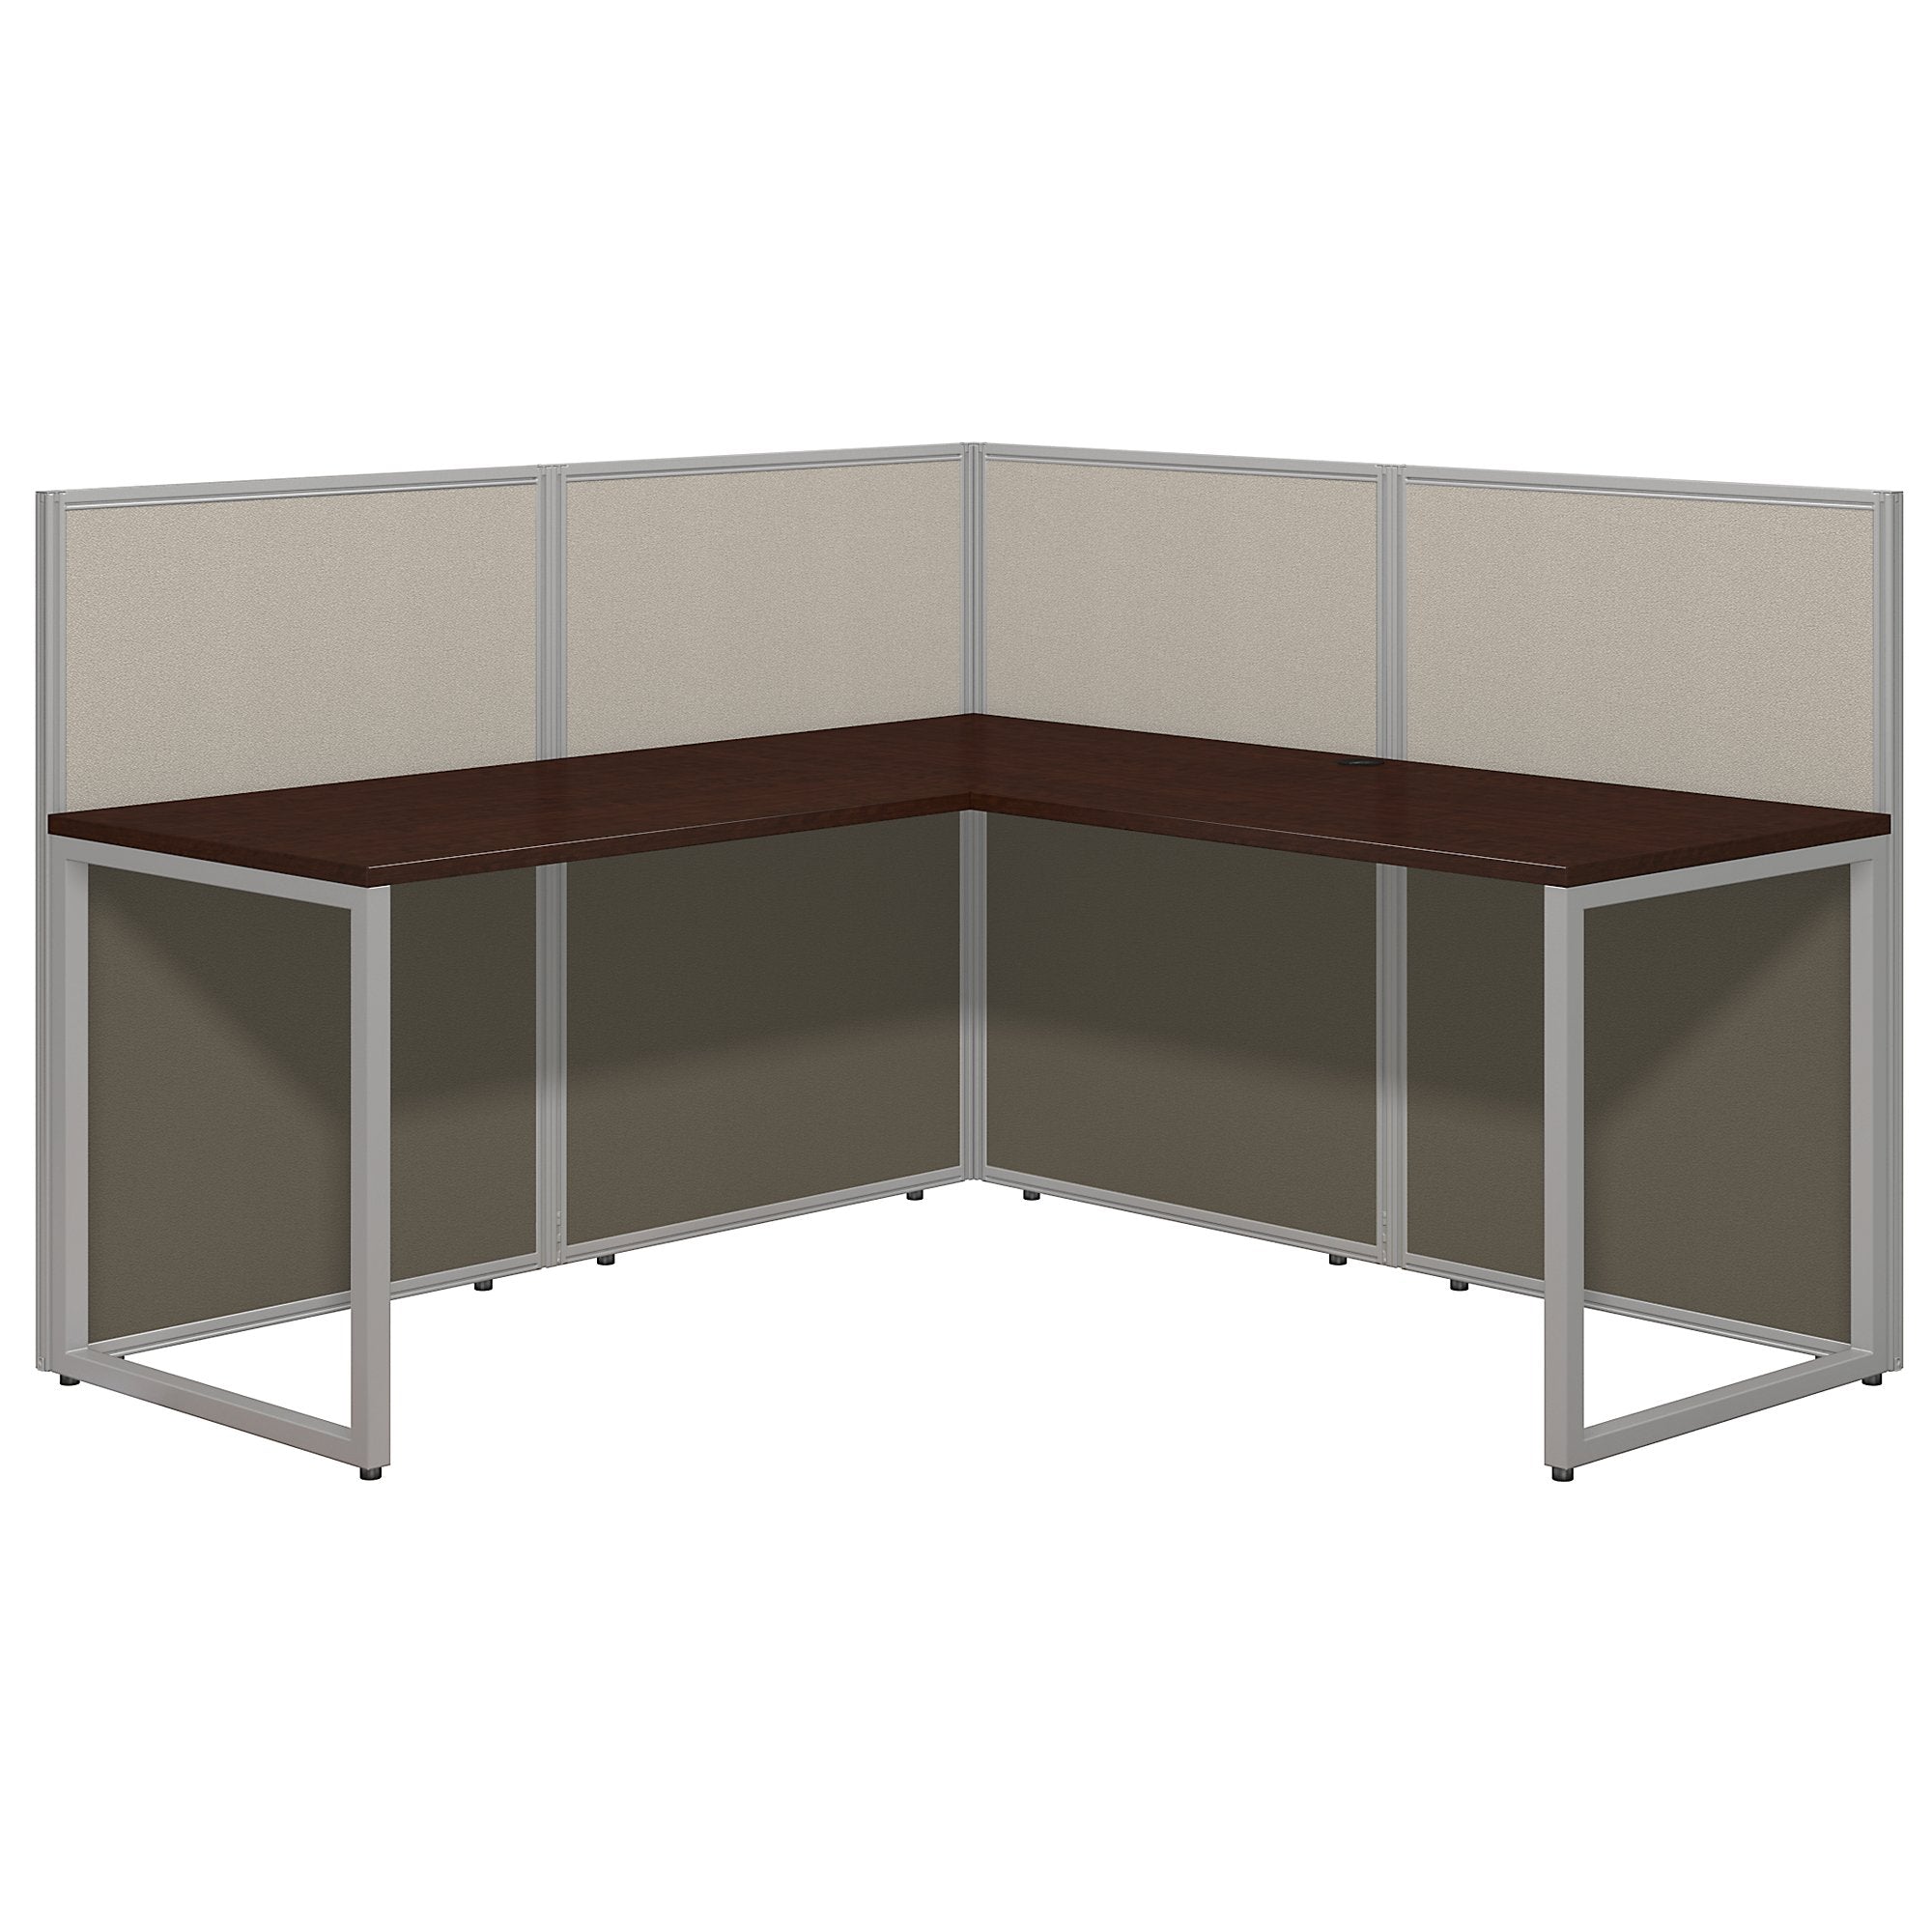 Bush Business Furniture Easy Office 60W L Shaped Desk Open Office | Mocha Cherry